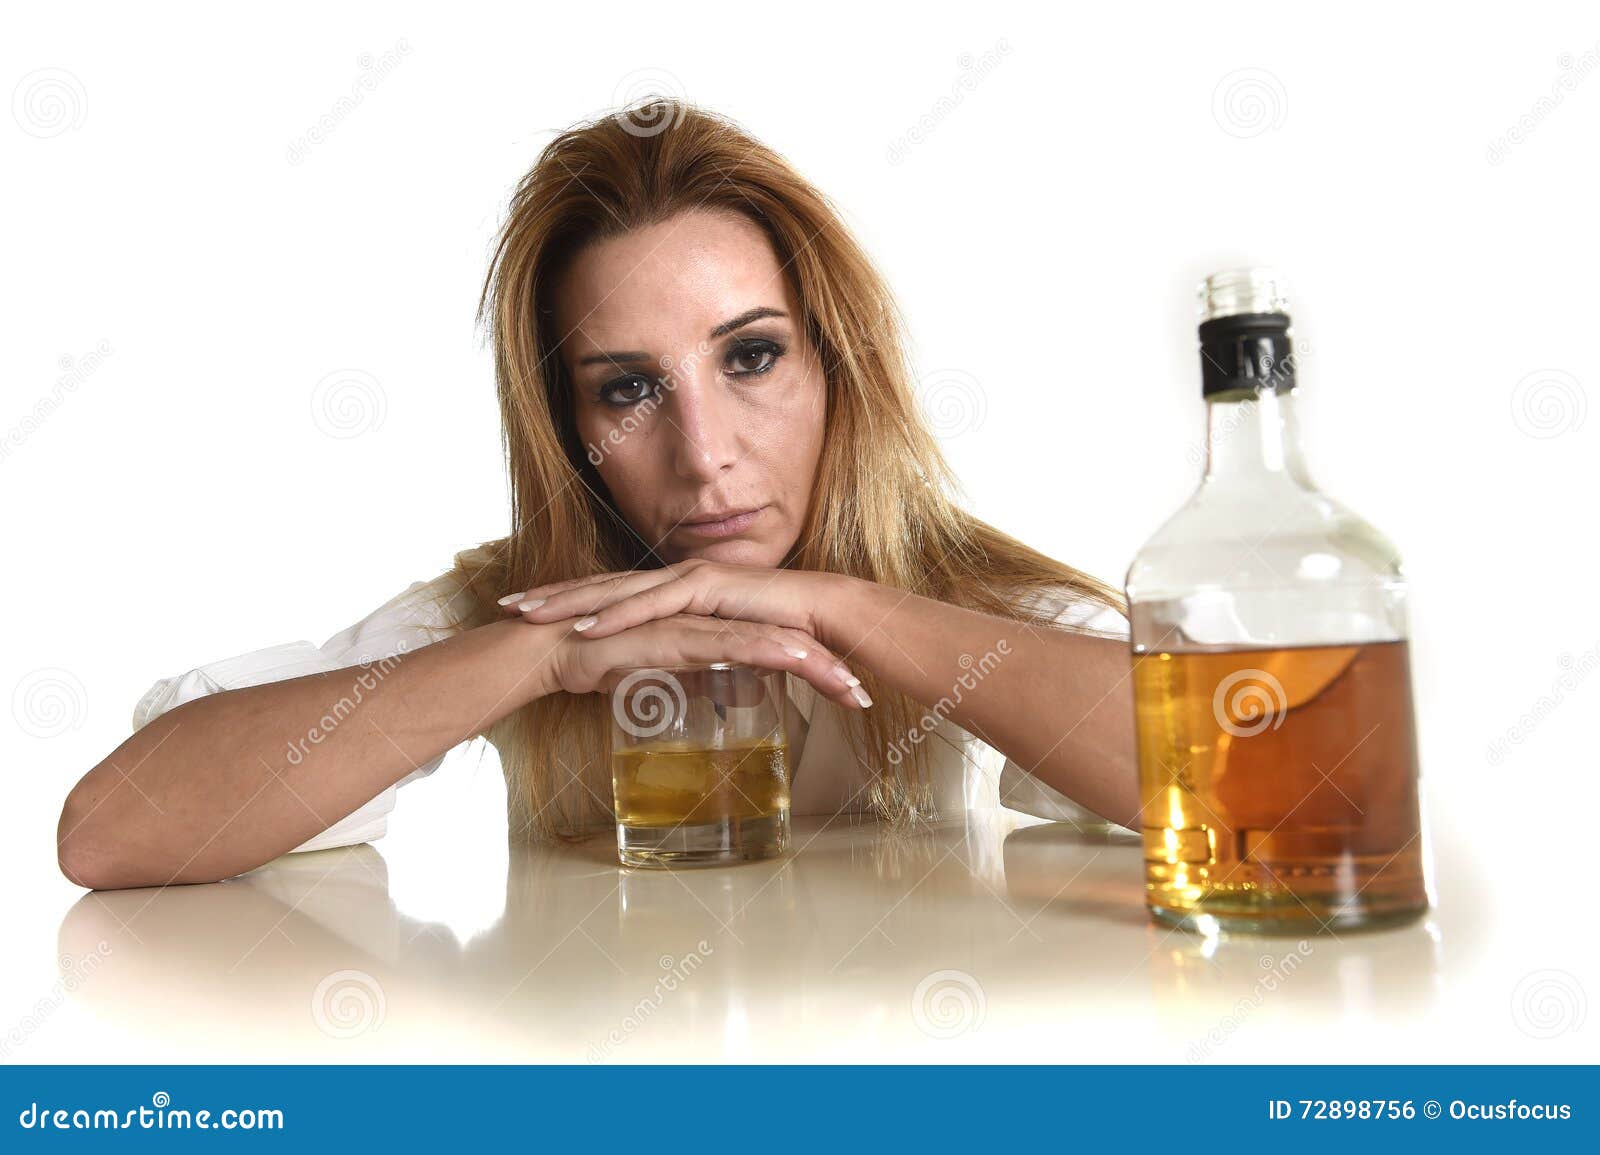 Как выглядел попей. Женщина и алкоголь. Пьющая женщина.